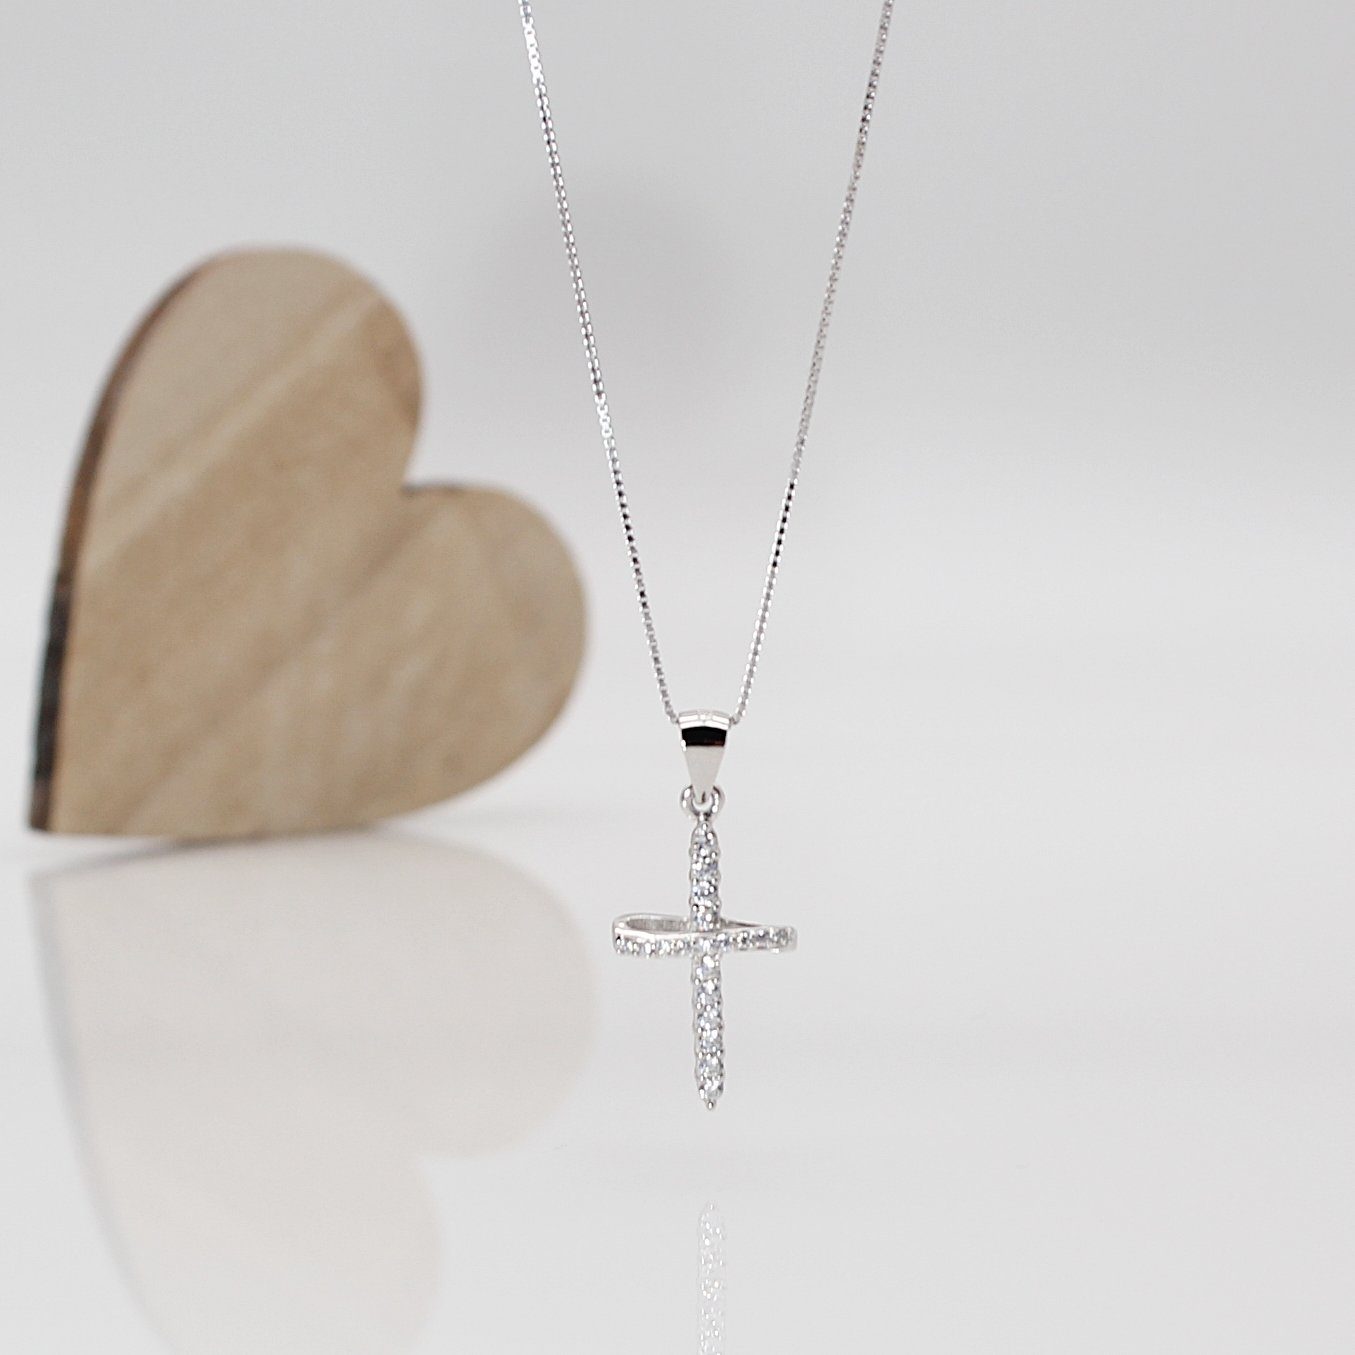 ELLAWIL Kreuzkette Silberkette mit Kreuz Anhänger Kreuzanhänger Damen  Halskette (Sterling Silber 925, Kettenlänge 50 cm), inklusive  Geschenkschachtel